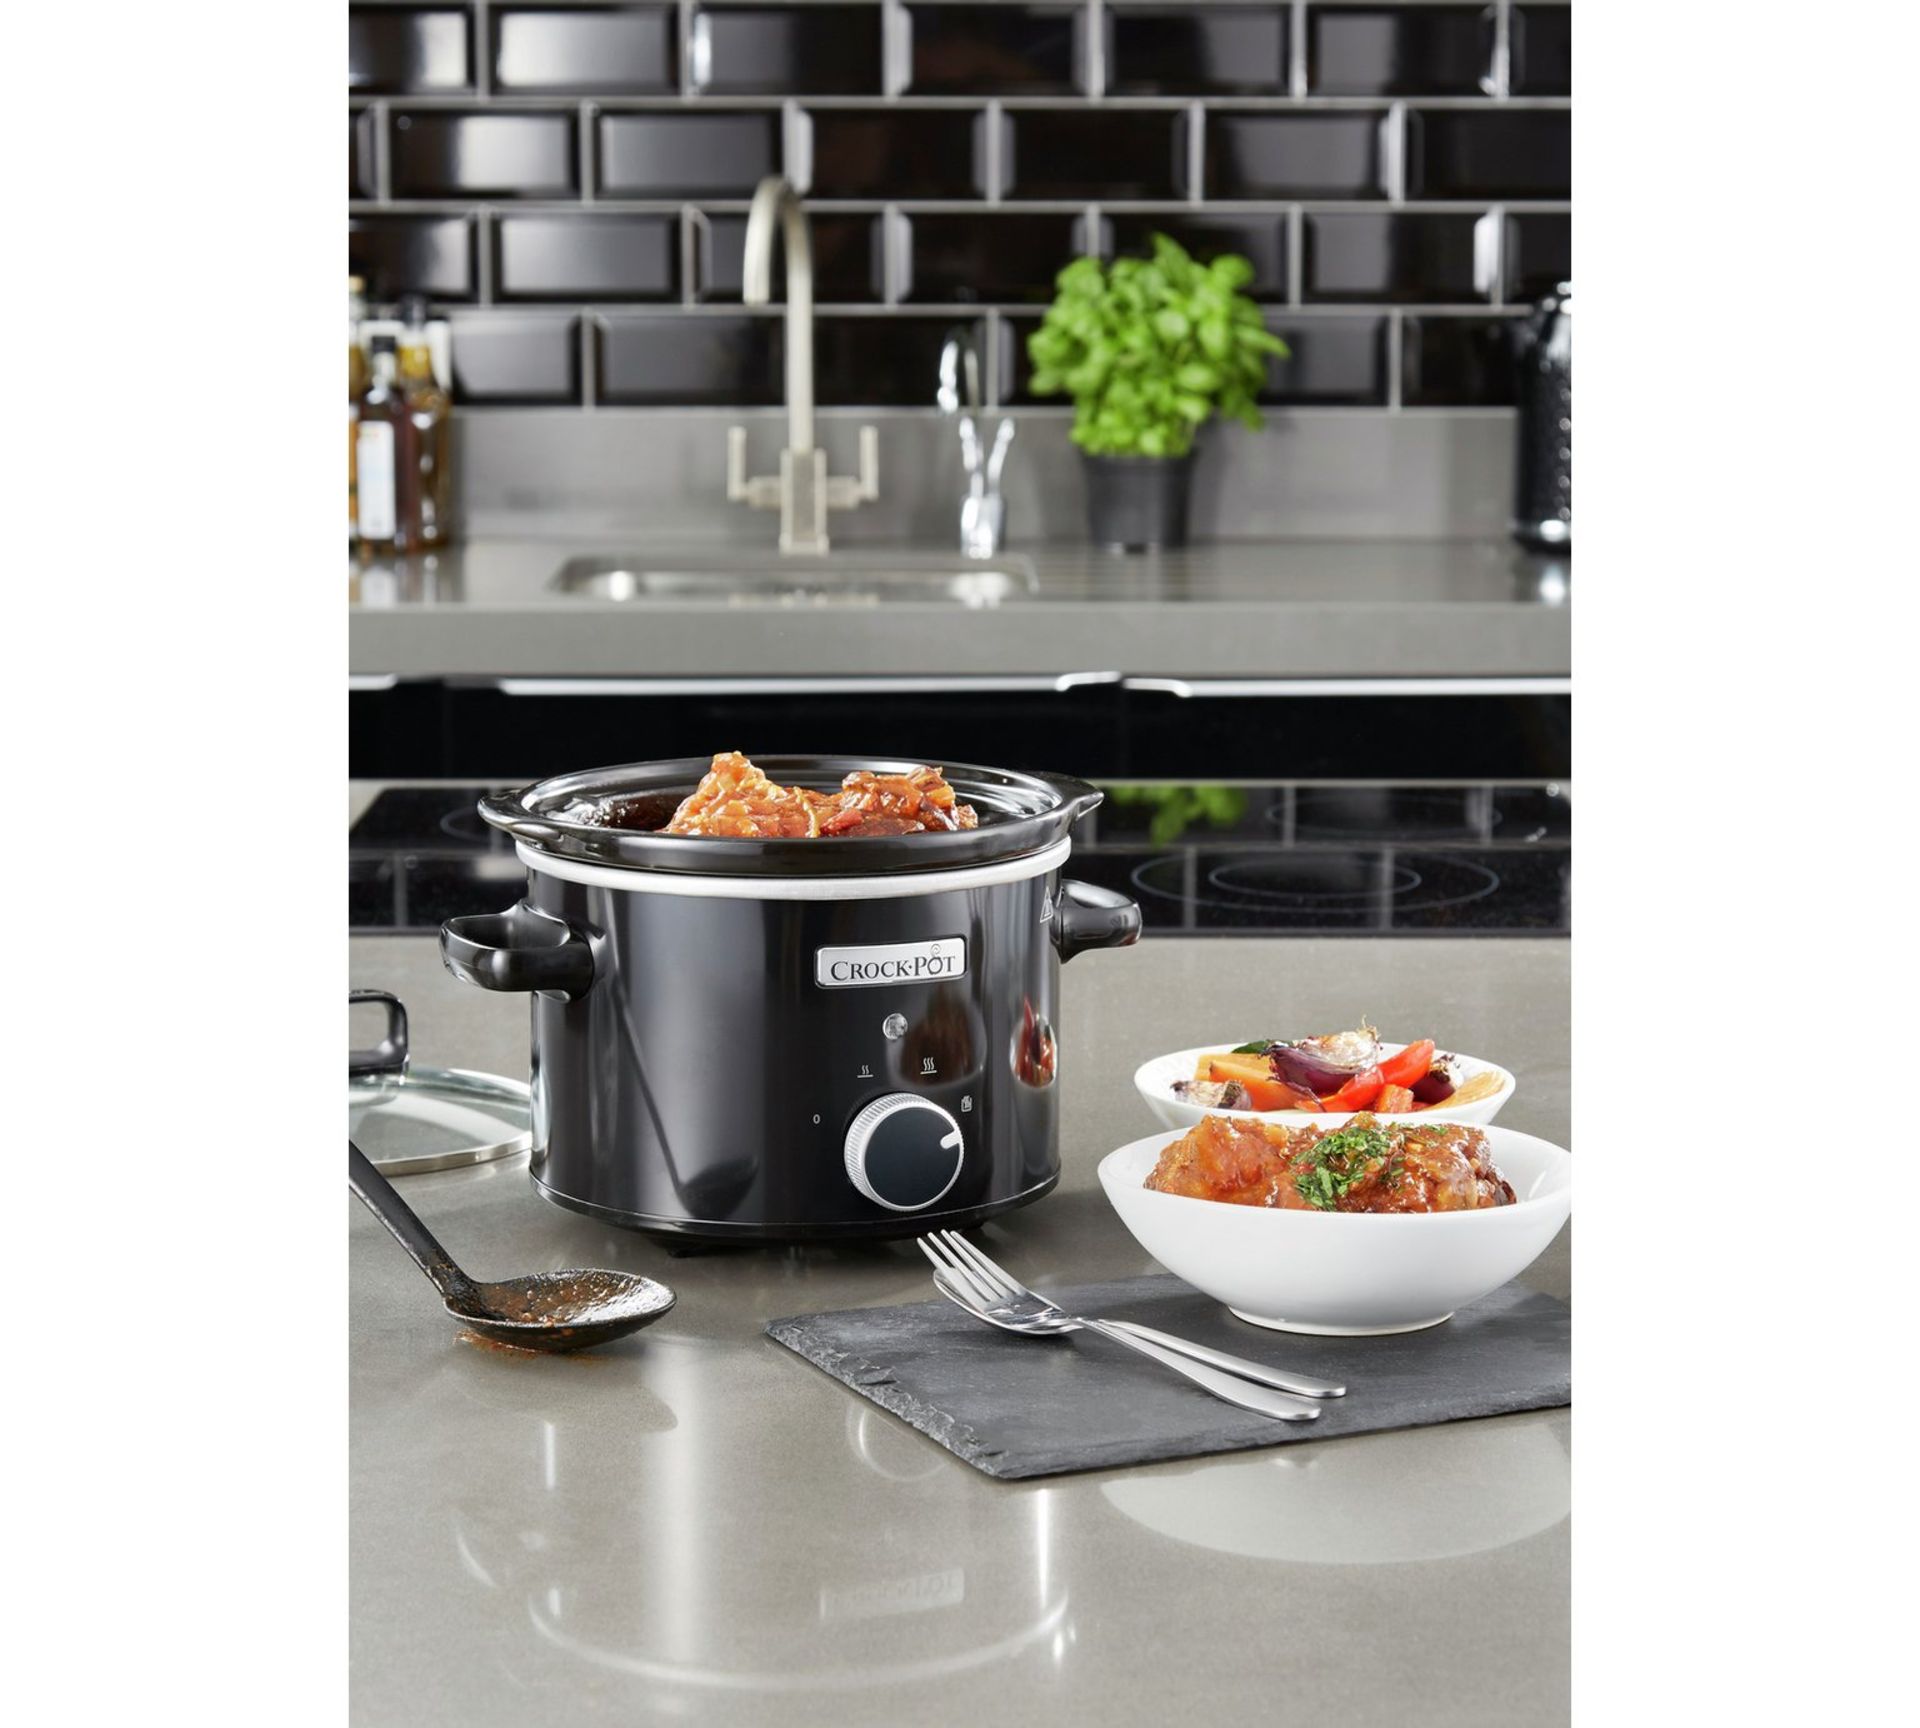 V Brand New 2.4L Crock-Pot Slow Cooker - £31.99 at Espares.co.uk - Black - Dishwasher Safe - Oven